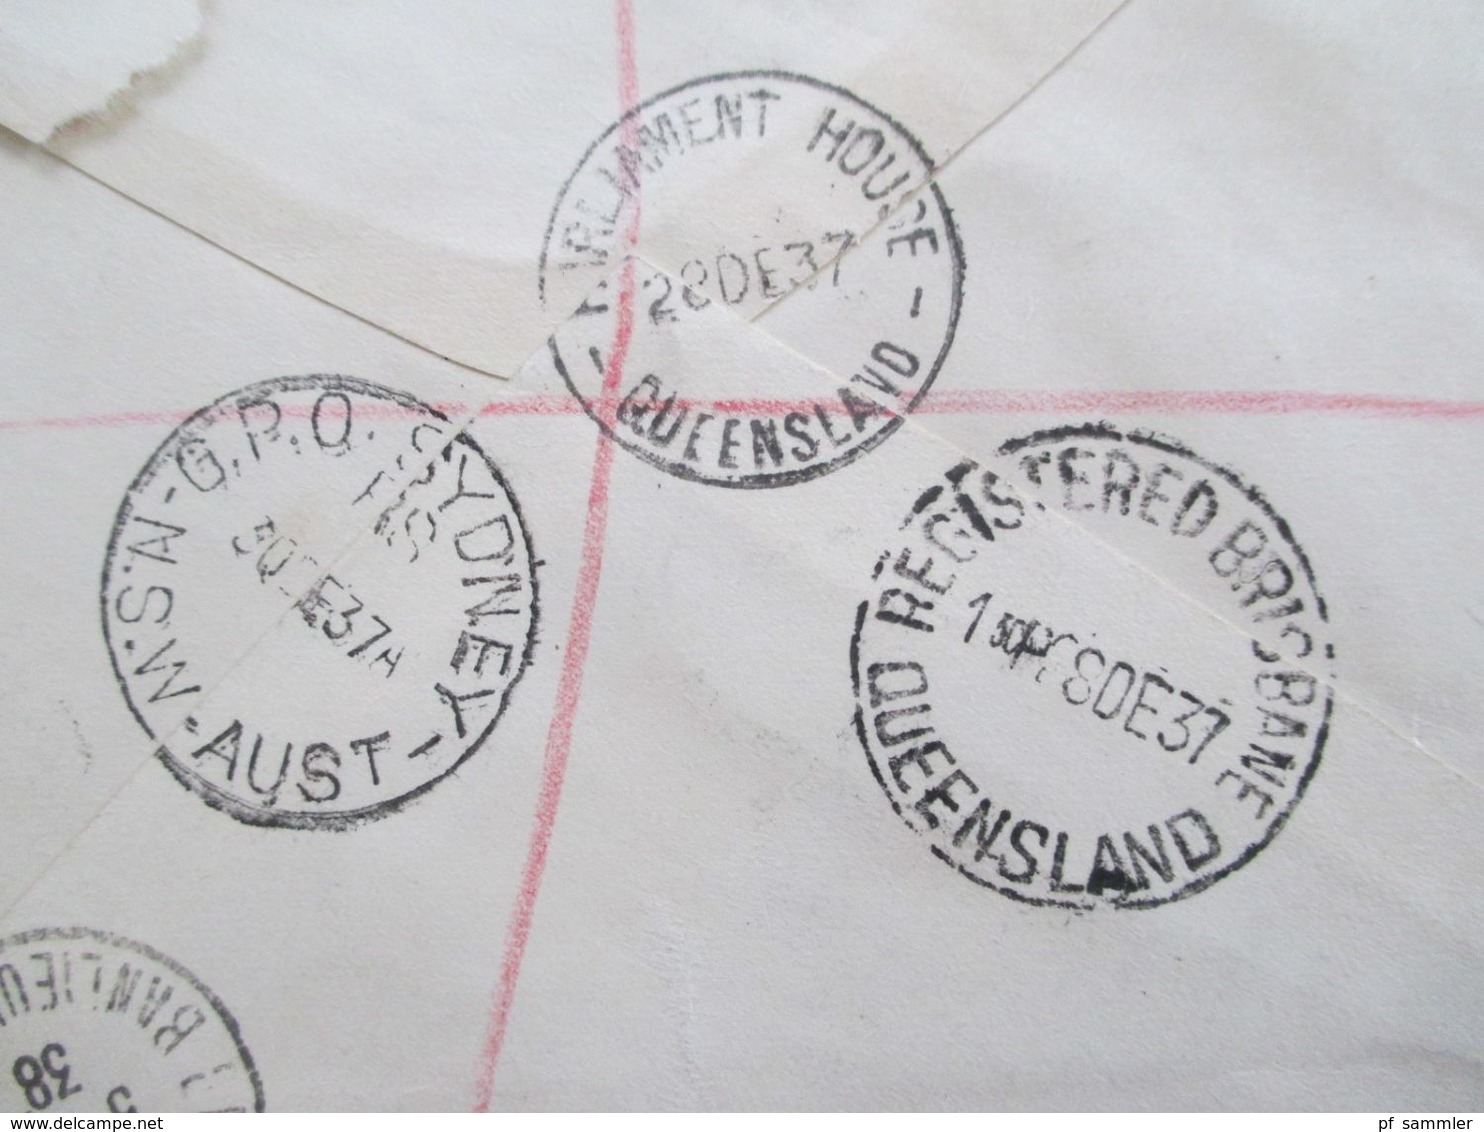 Australien 1937 Einschreiben Parliament House Brisbane Queensland Registered Nach Frankreich Tückseitig 4 Stempel - Cartas & Documentos